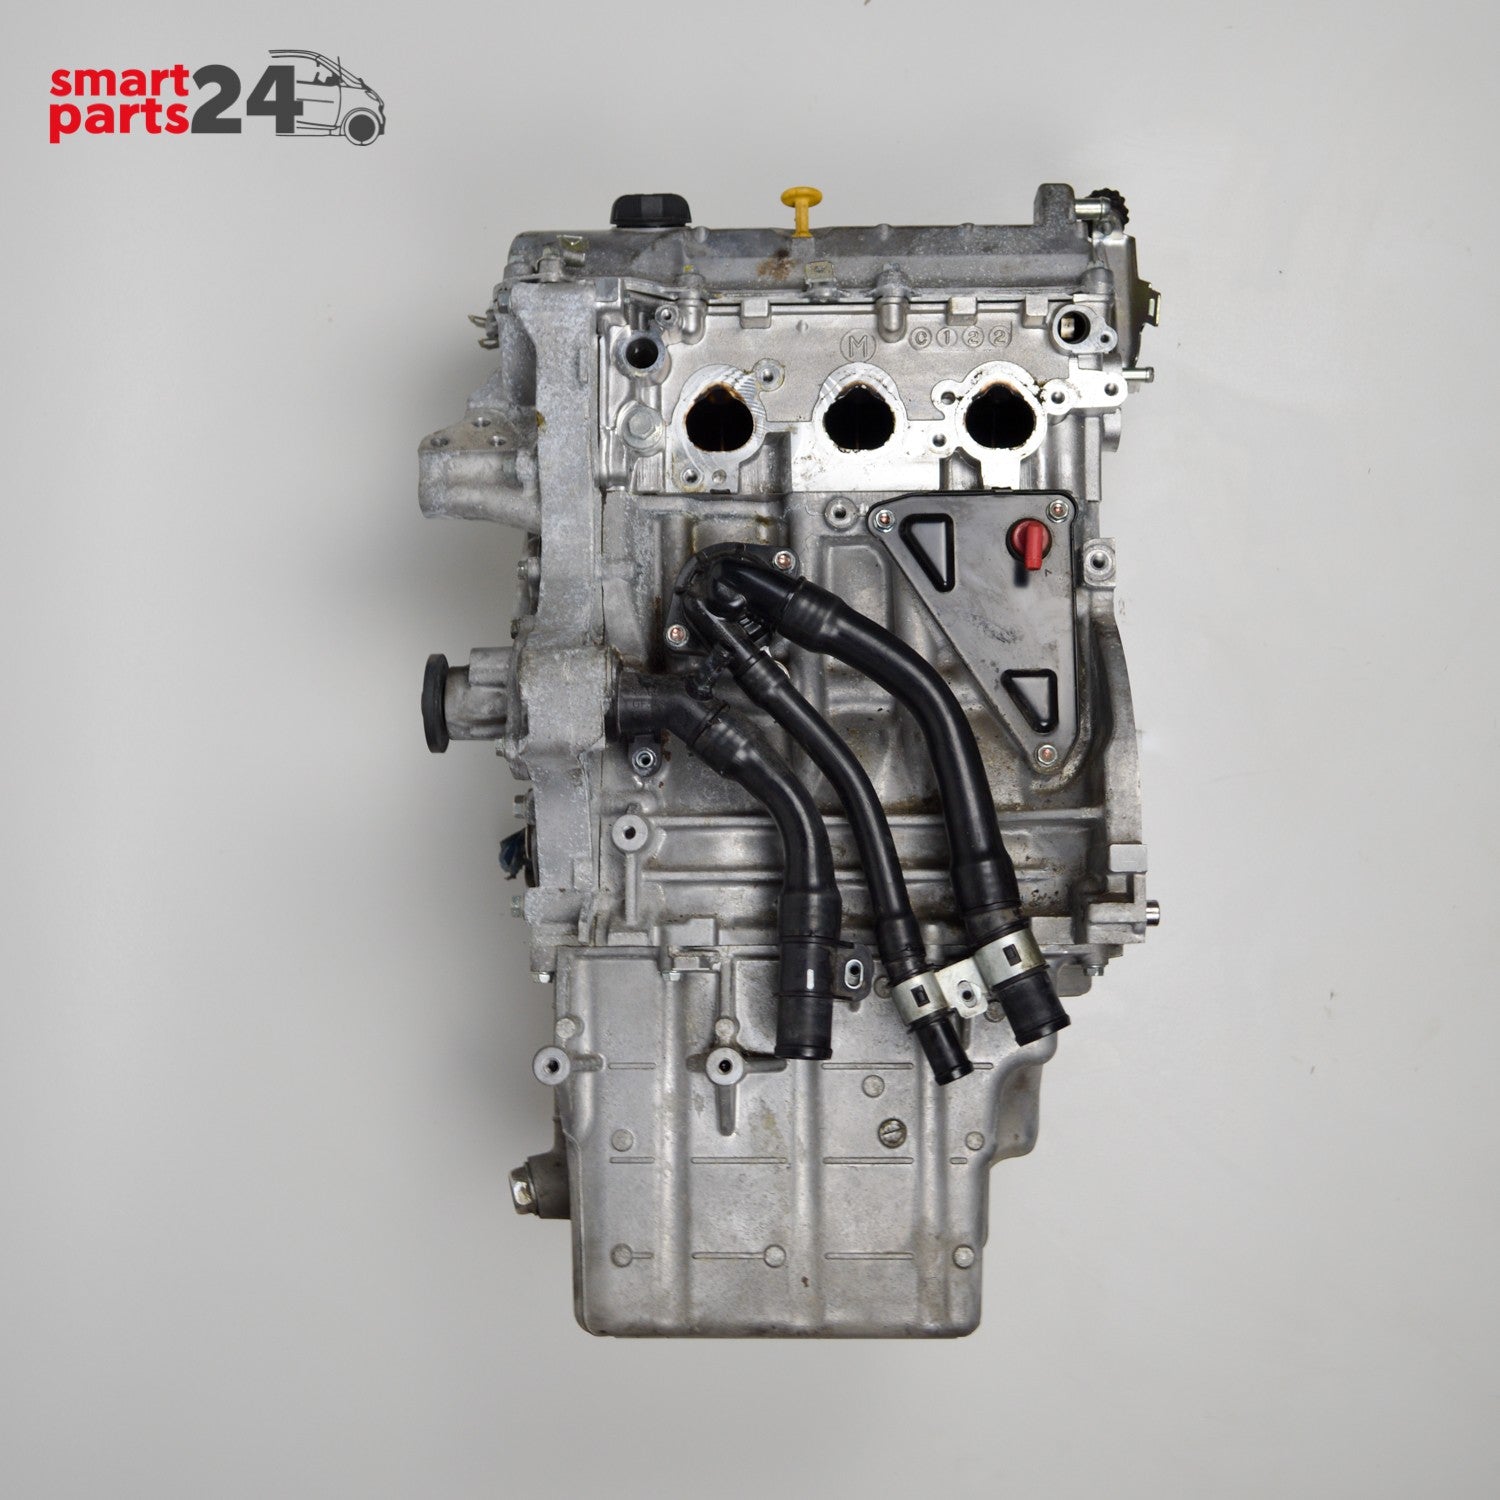 Smart Fortwo 451 Moteur cdi Diesel 799ccm A6600102000 M660950